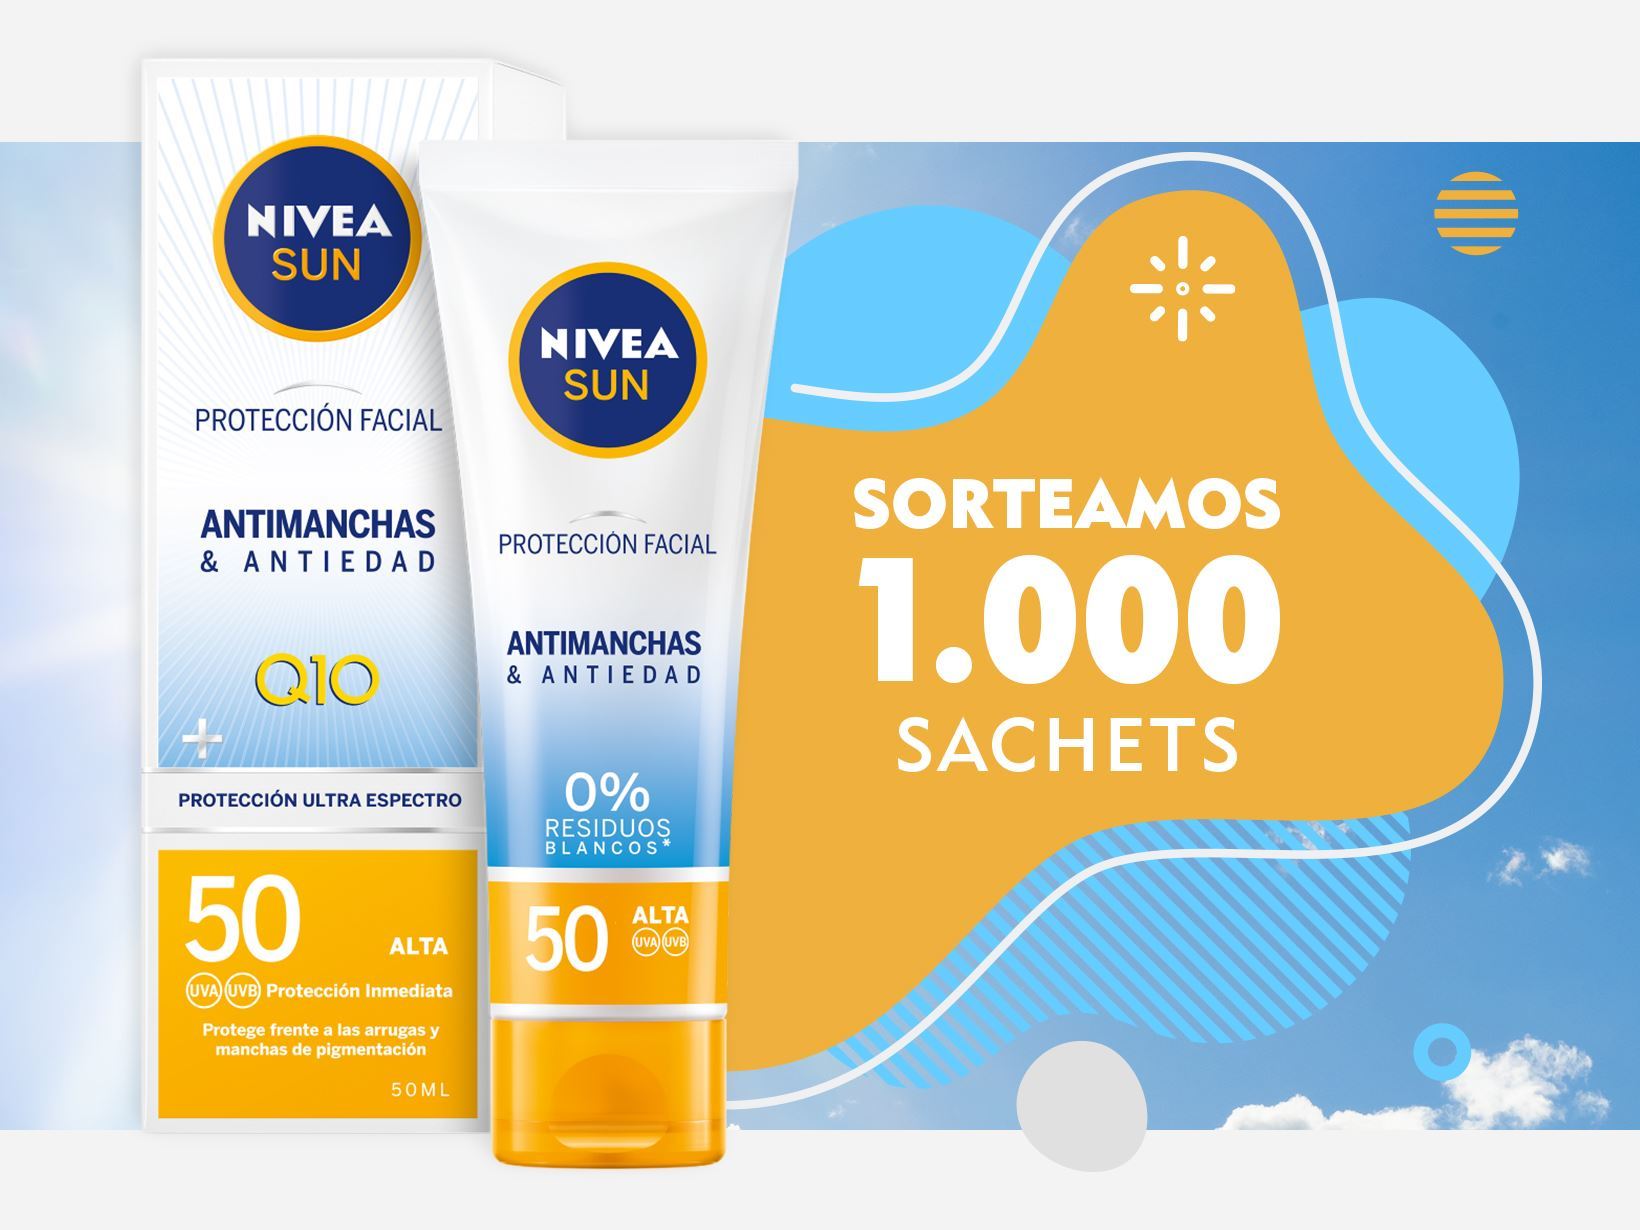 Nivea sortea 1.000 muestras de 4 ml de NIVEA SUN Protección Facial UV Antimanchas & Antiedad con Q10